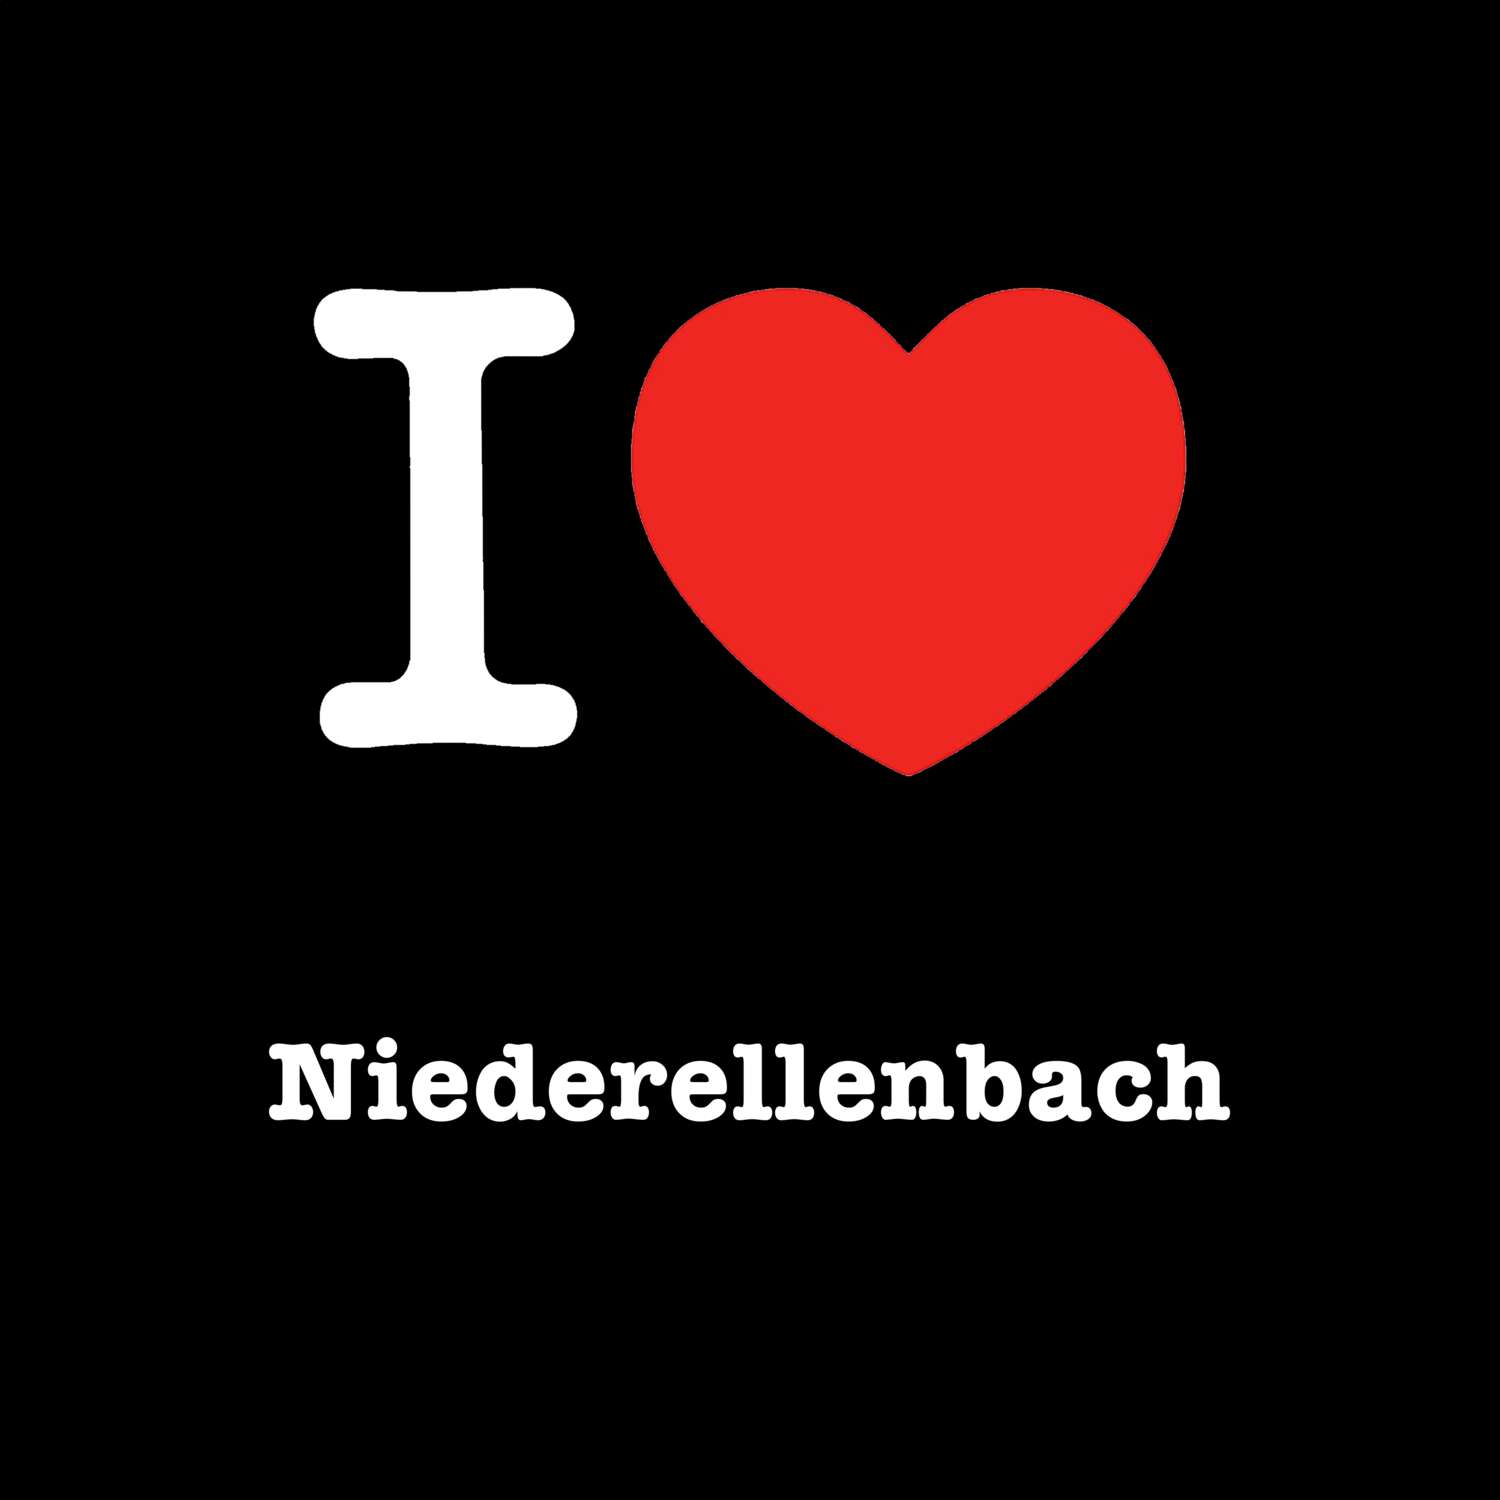 Niederellenbach T-Shirt »I love«